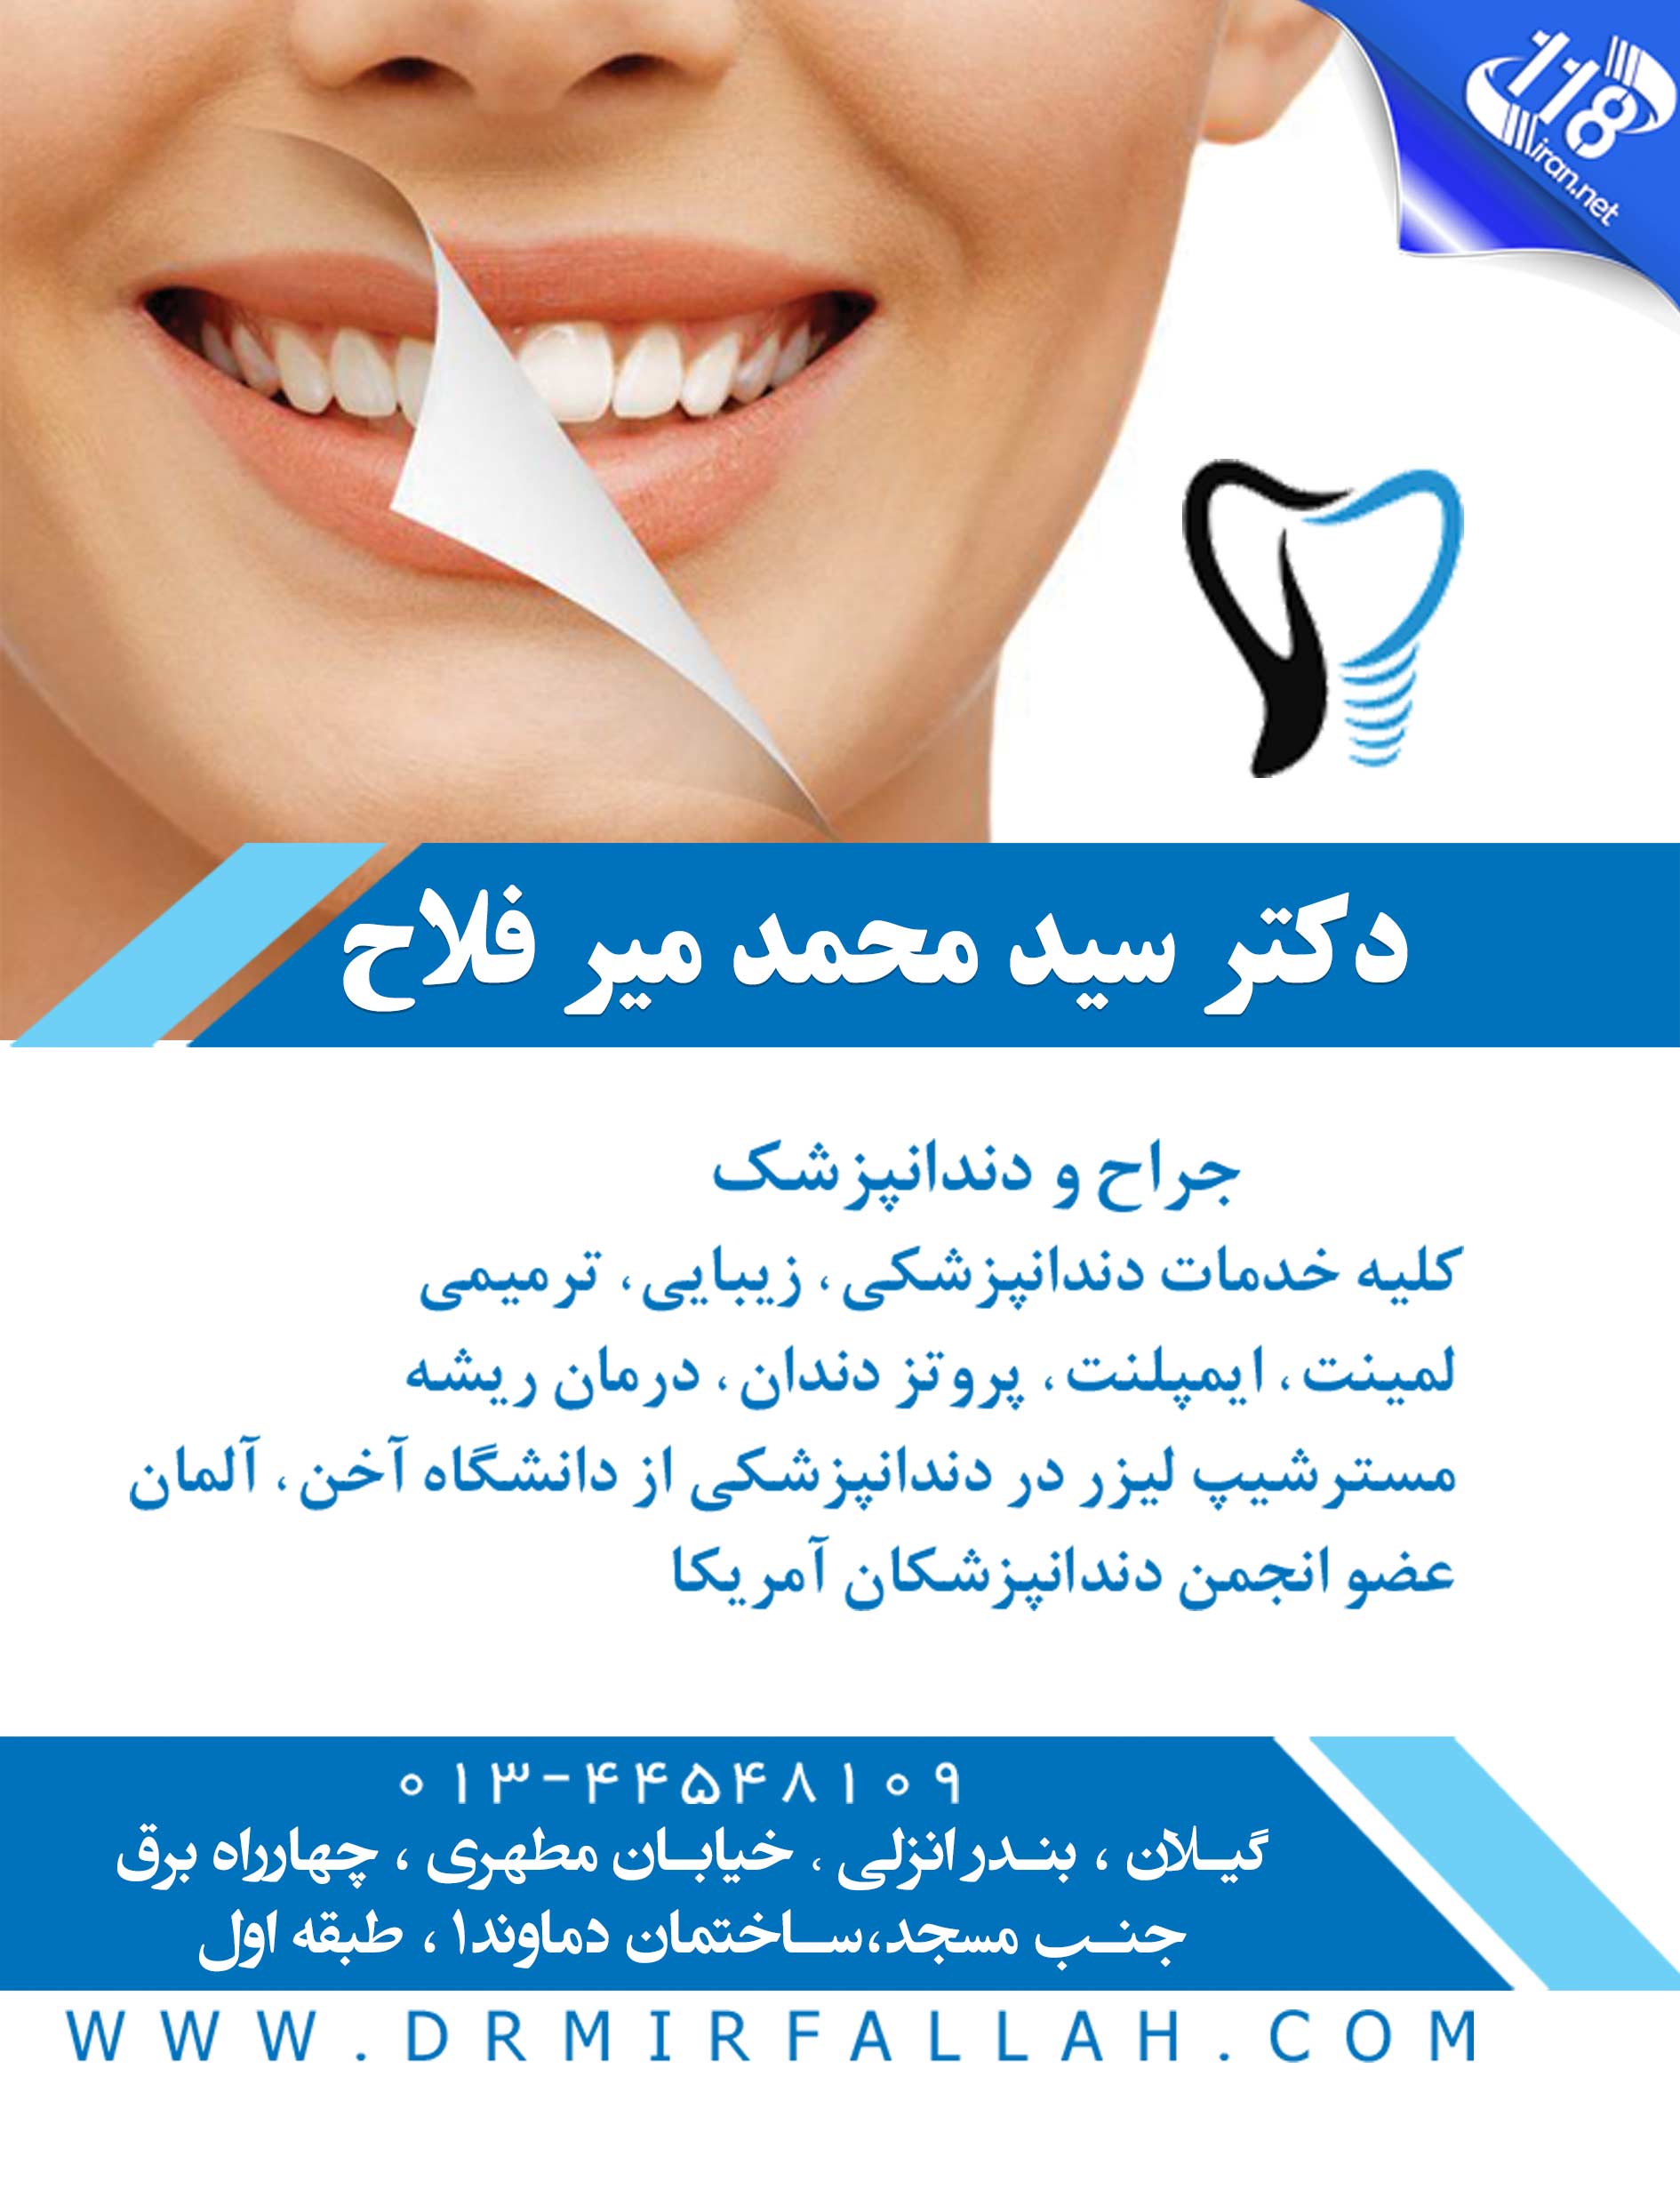  جراح و دندانپزشک دکتر سید محمد میر فلاح در بندر انزلی 